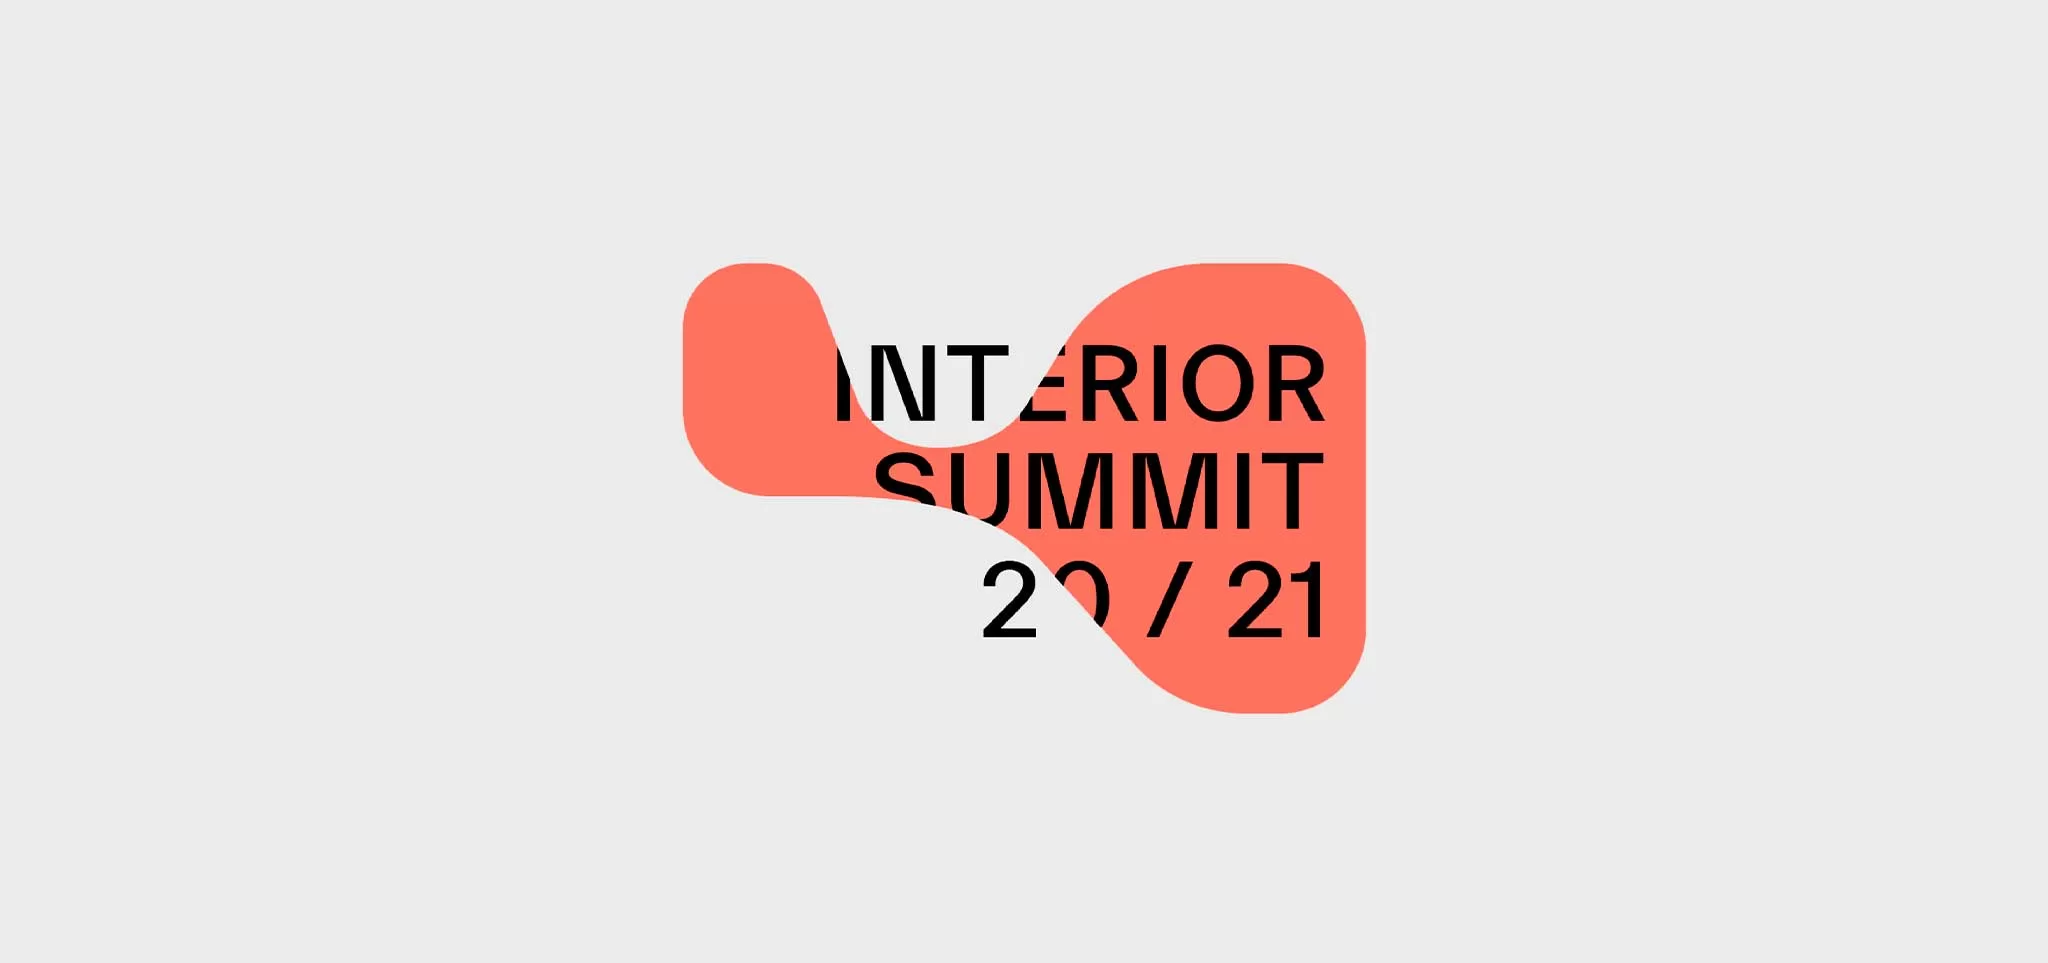 Interior Summit